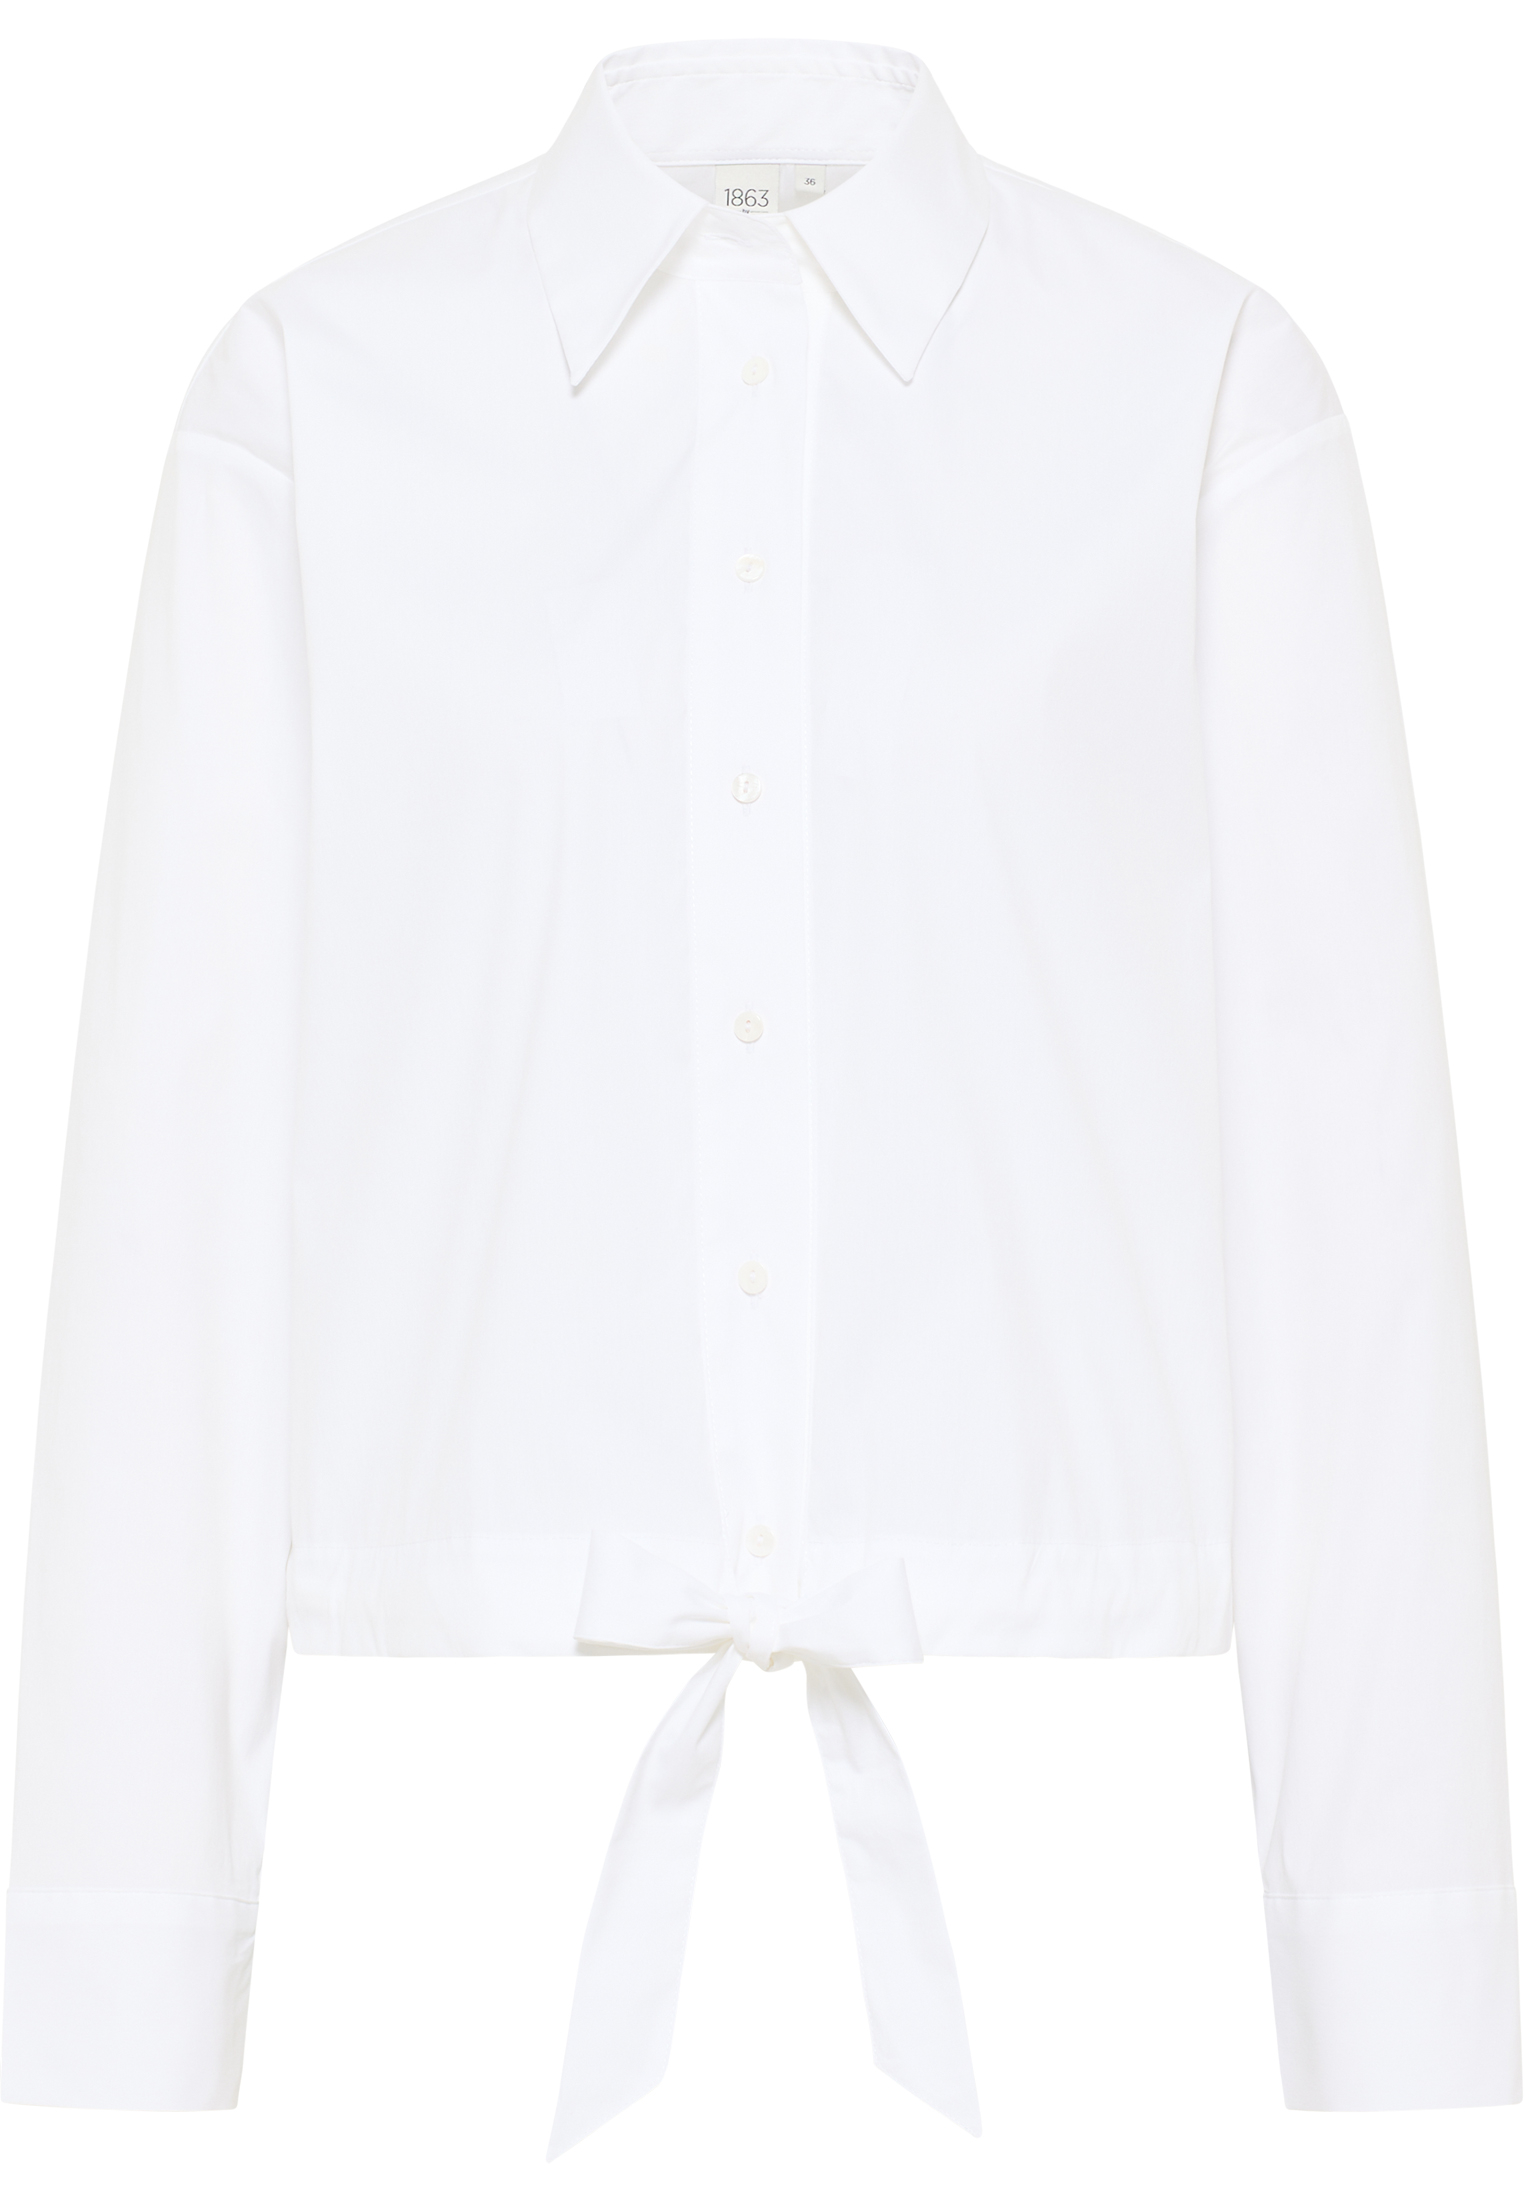 Signature Shirt Bluse in weiß unifarben | weiß | 34 | Langarm |  2BL04027-00-01-34-1/1